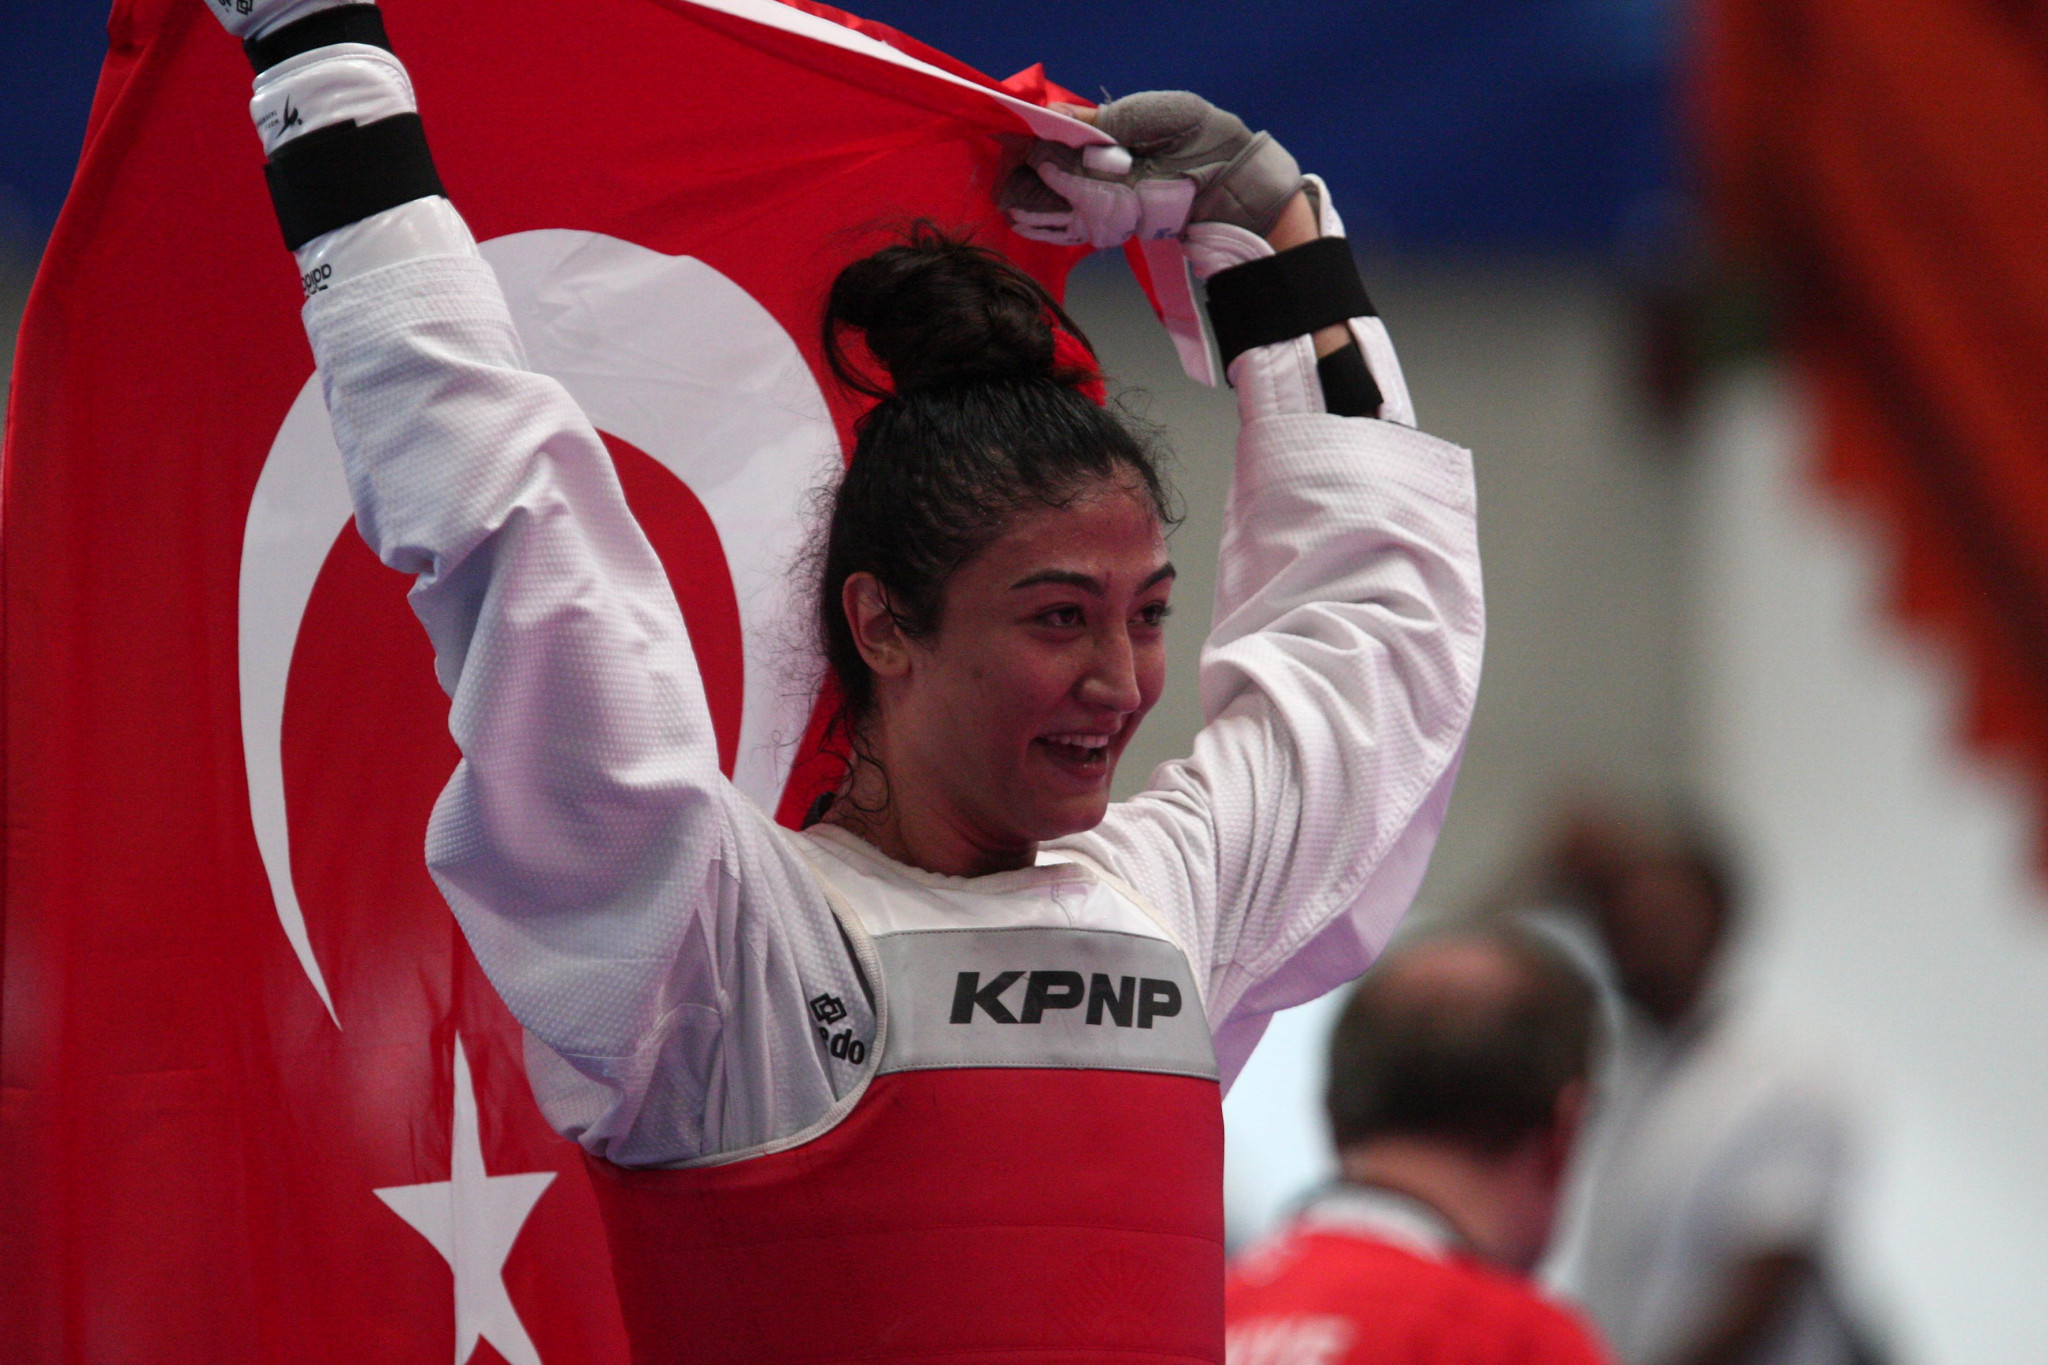 Turkey take two golds in taekwondo at Naples 2019